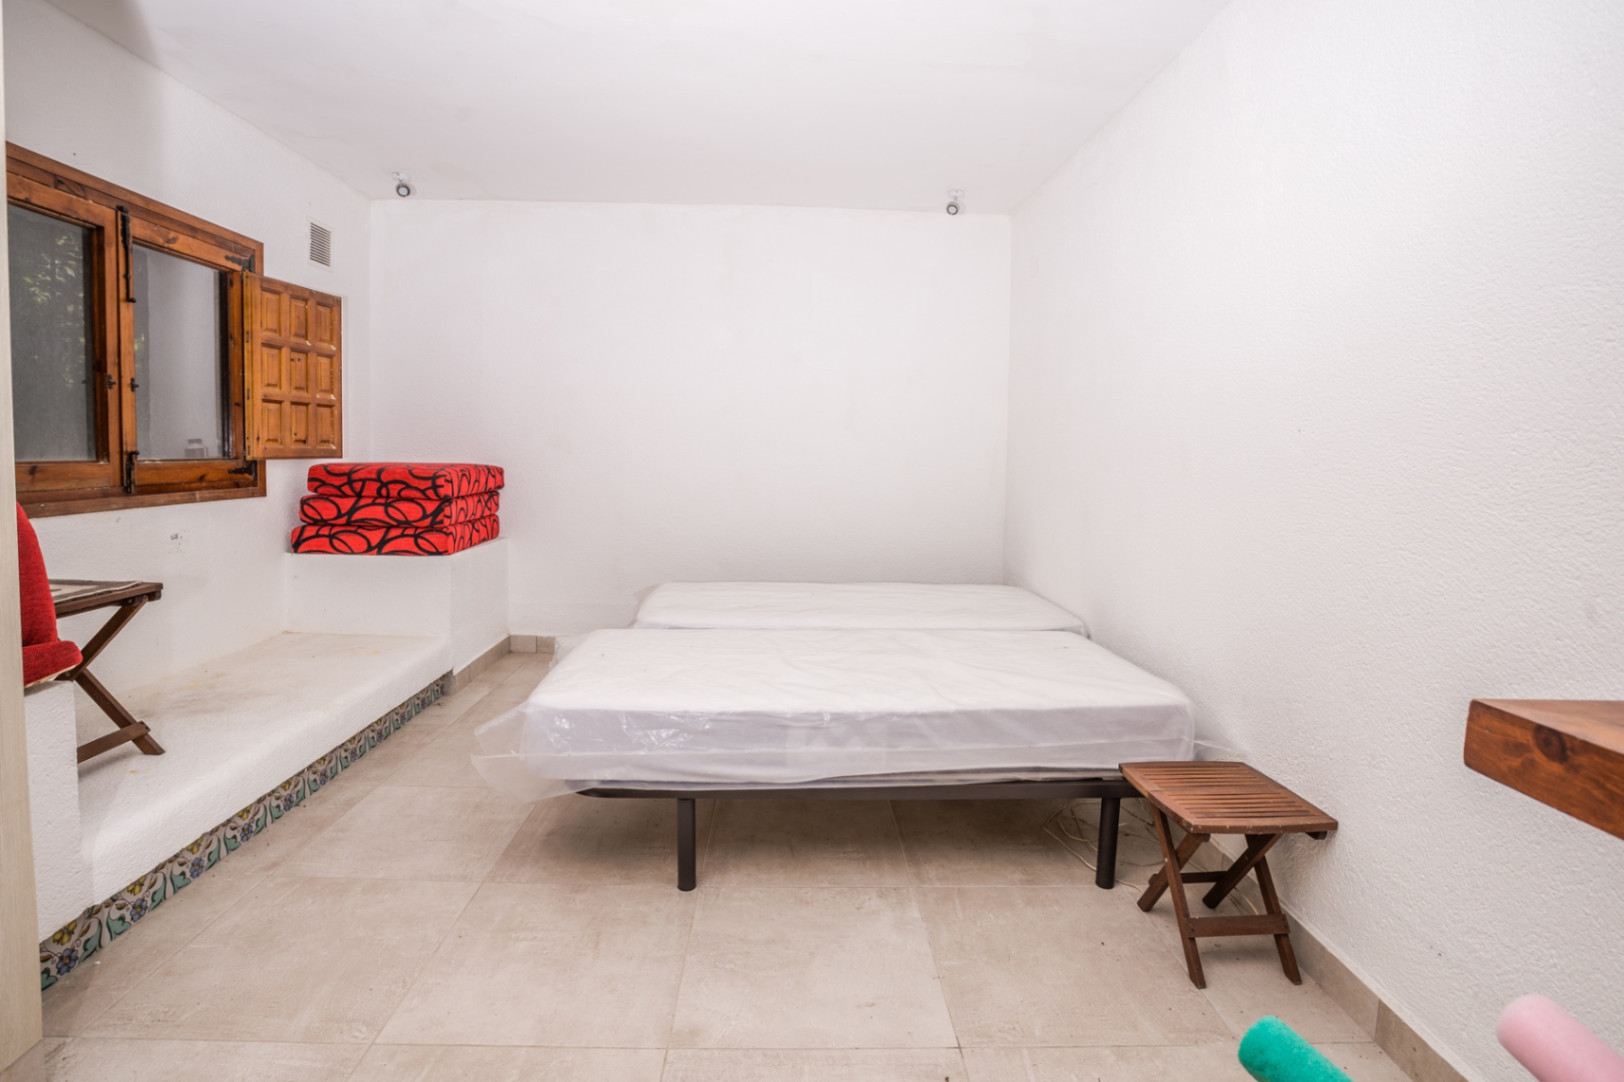 Impressionant propietat de 5 dormitoris a la venda al Tossalet Xàbia